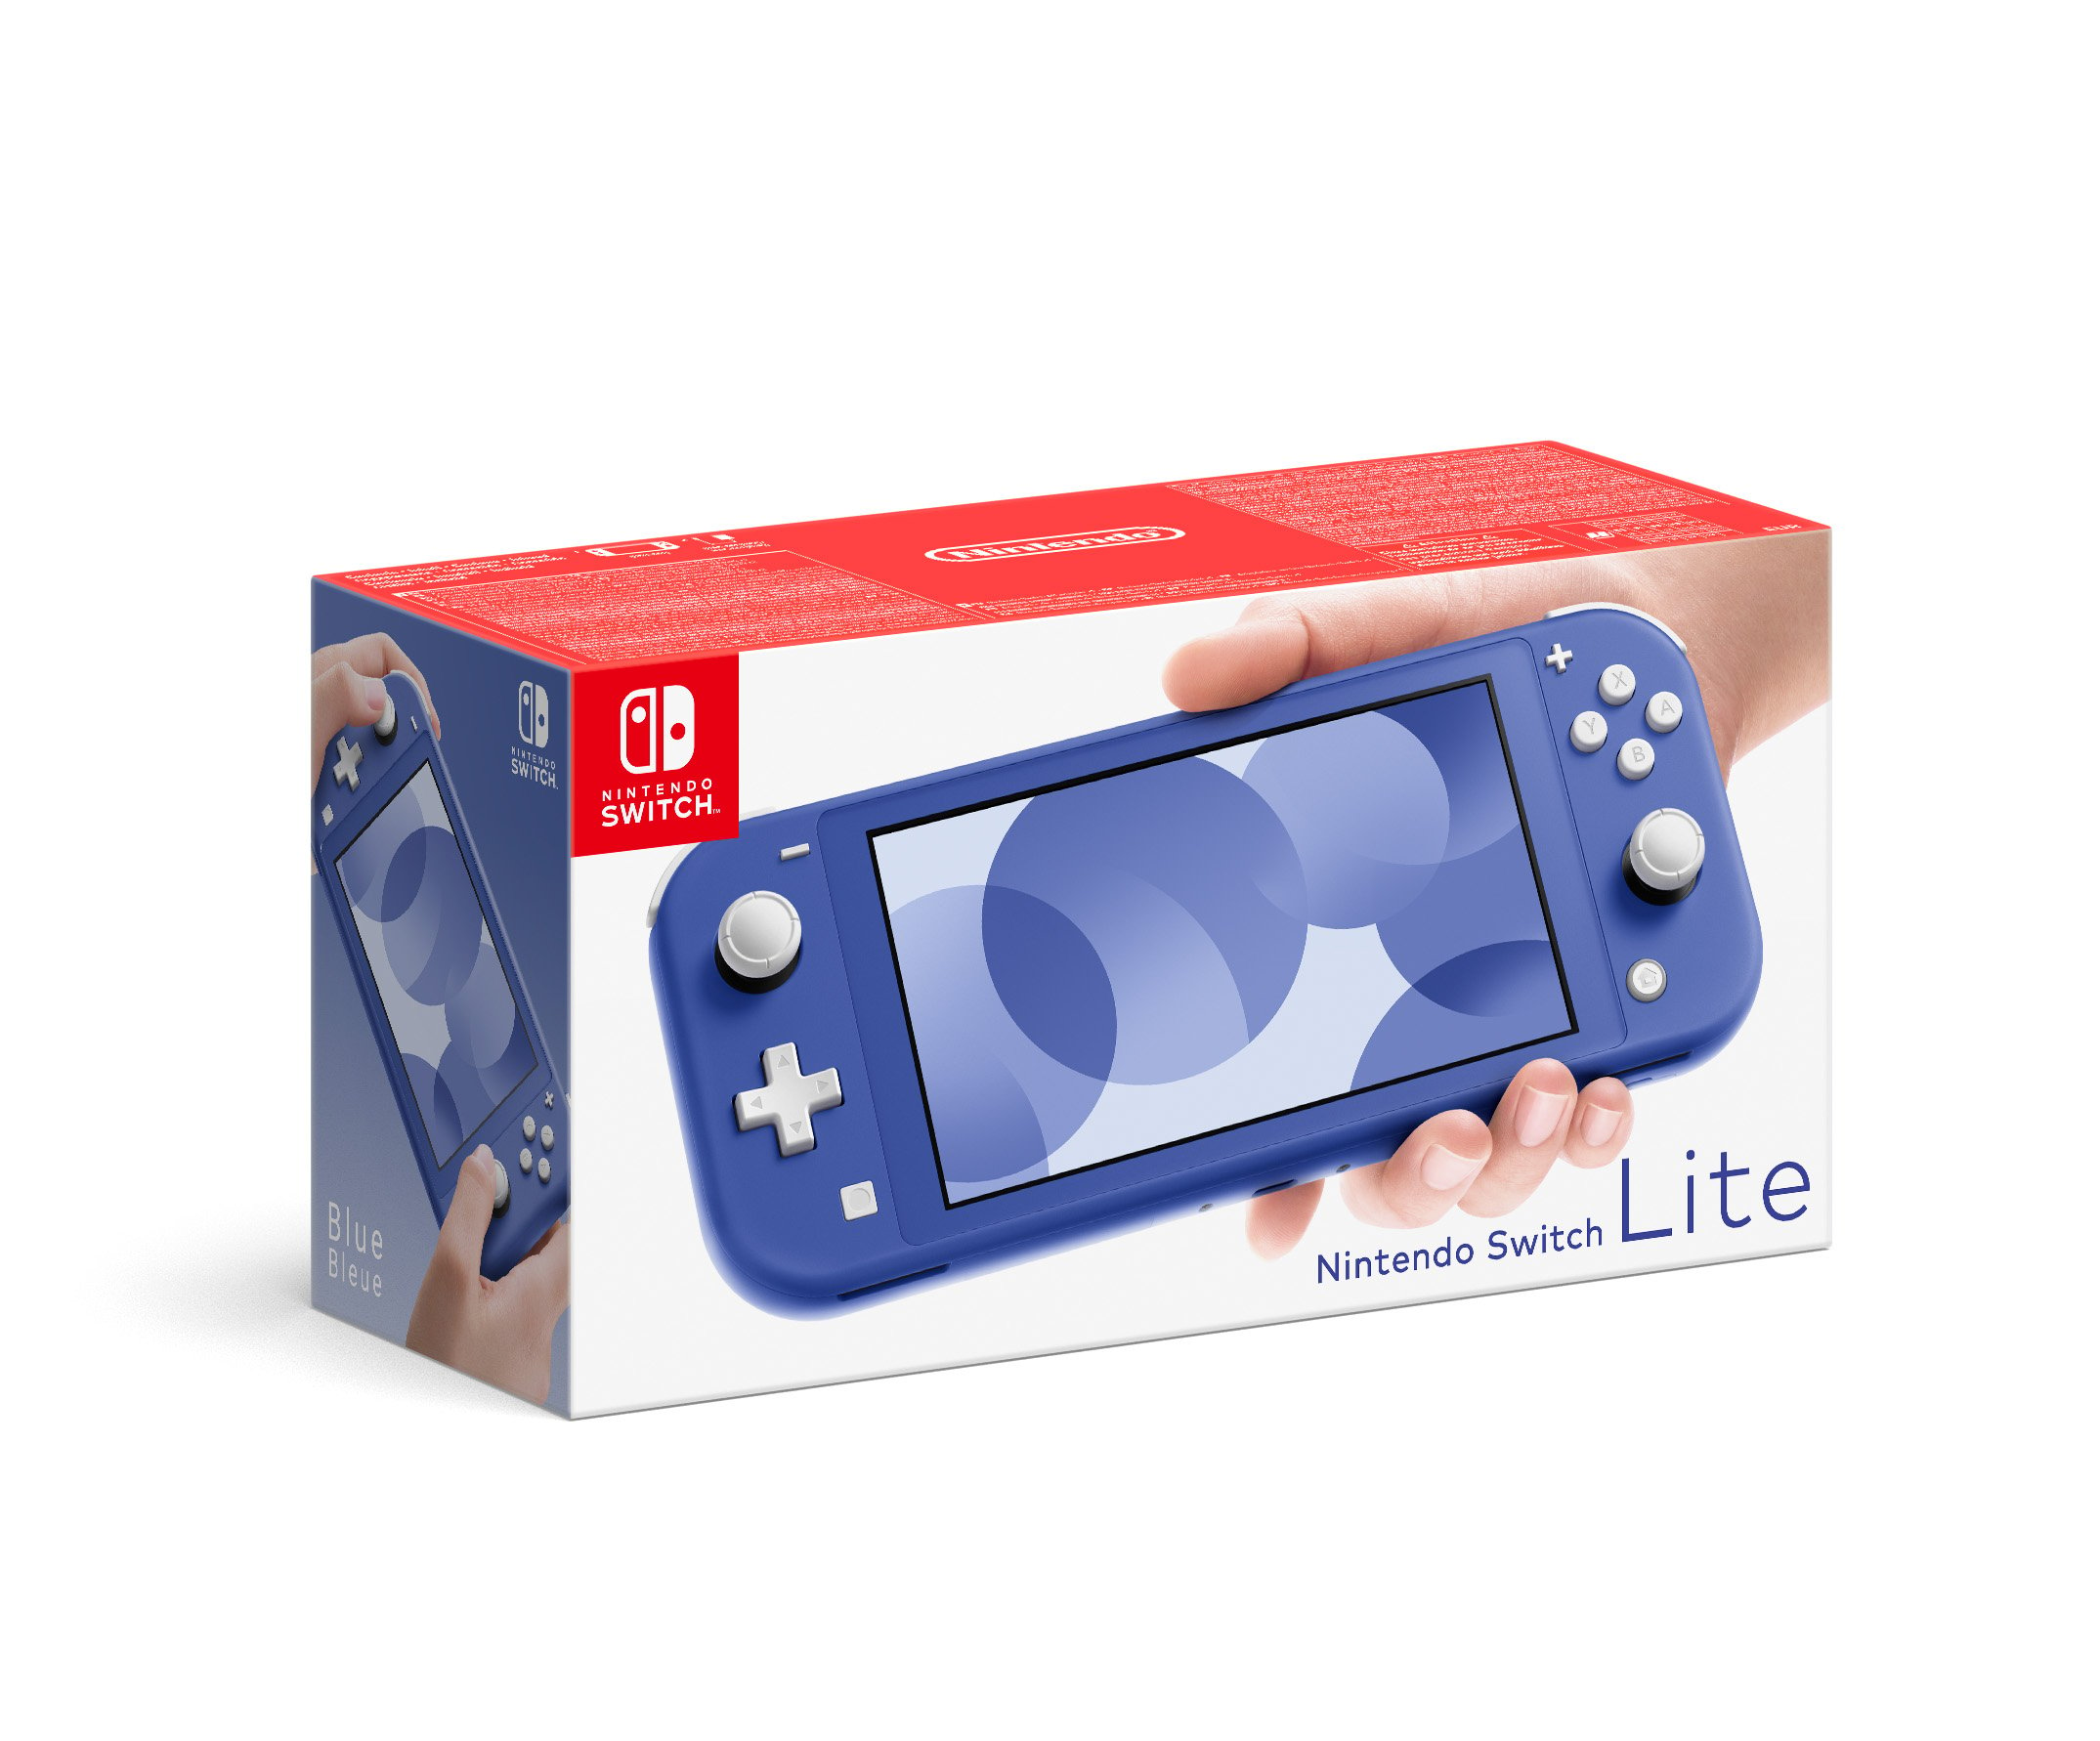 Sandet Poesi frelsen Køb Nintendo Switch Lite Blue - Nintendo Switch - Blue - Engelsk - Standard  - Fri fragt